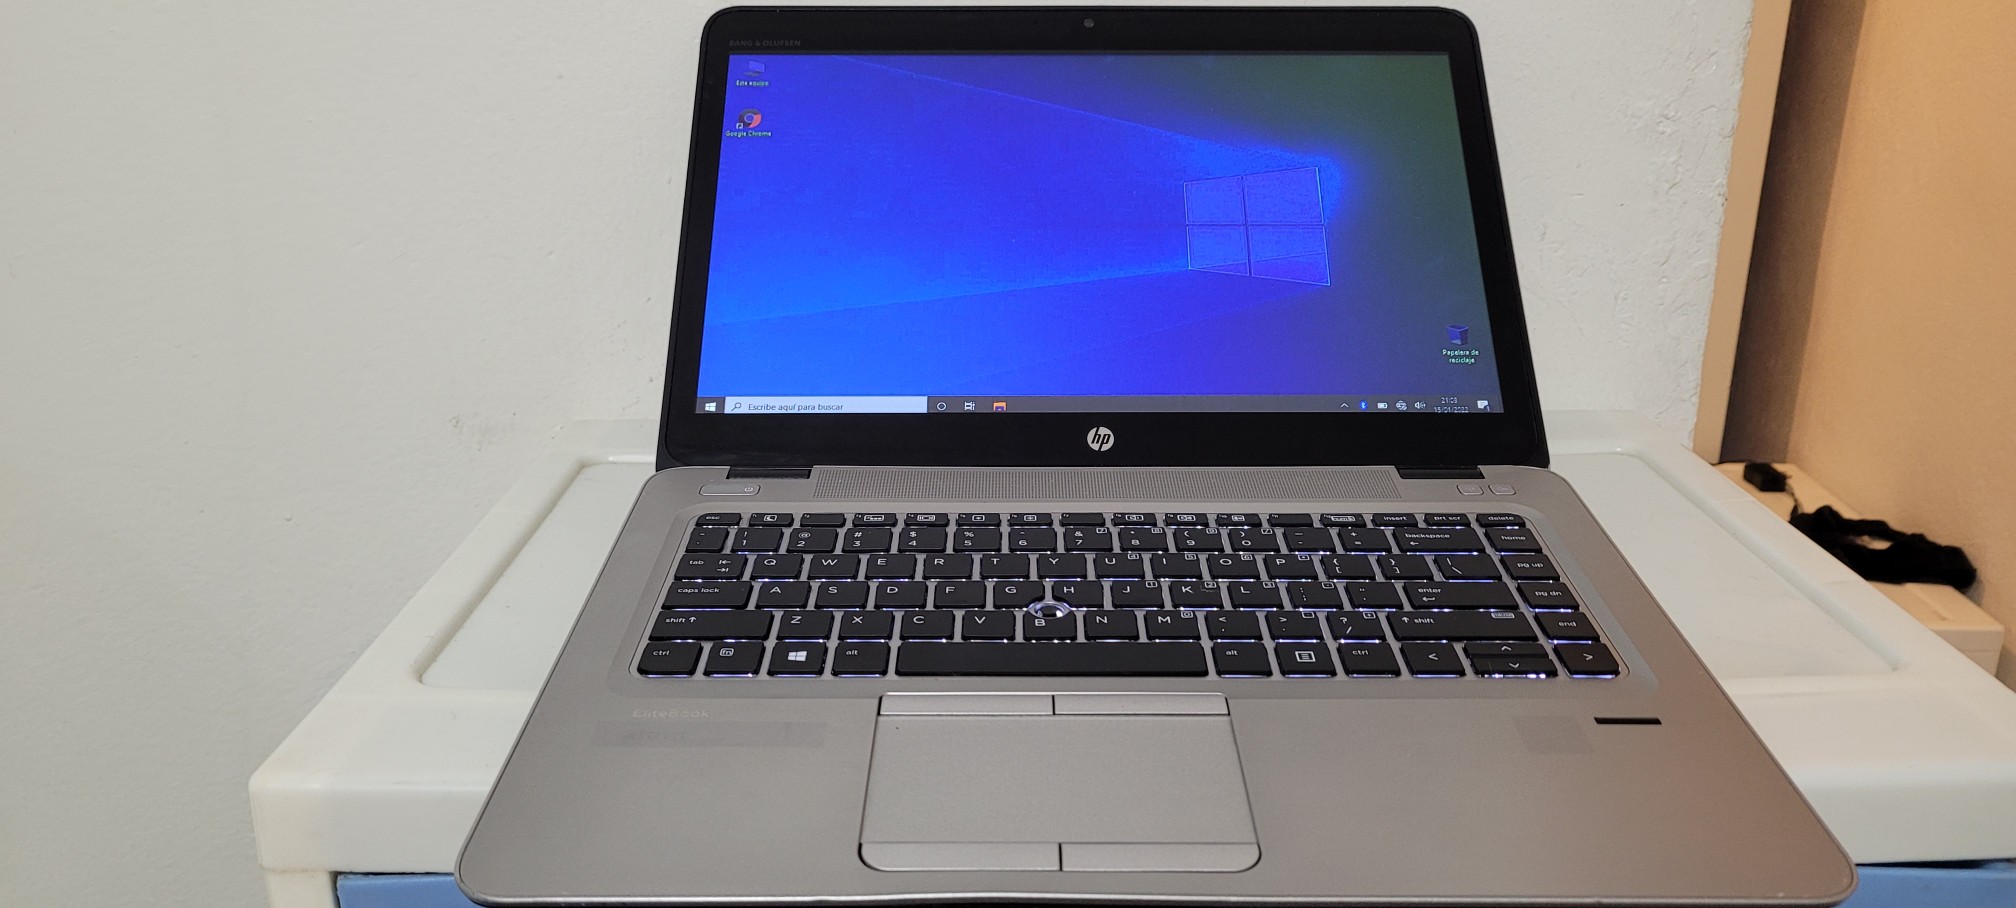 computadoras y laptops - Hp Touch g3 14 Pulg Core i5 7ma Gen Ram 8gb ddr4 Disco 500gb Full 1080p 0